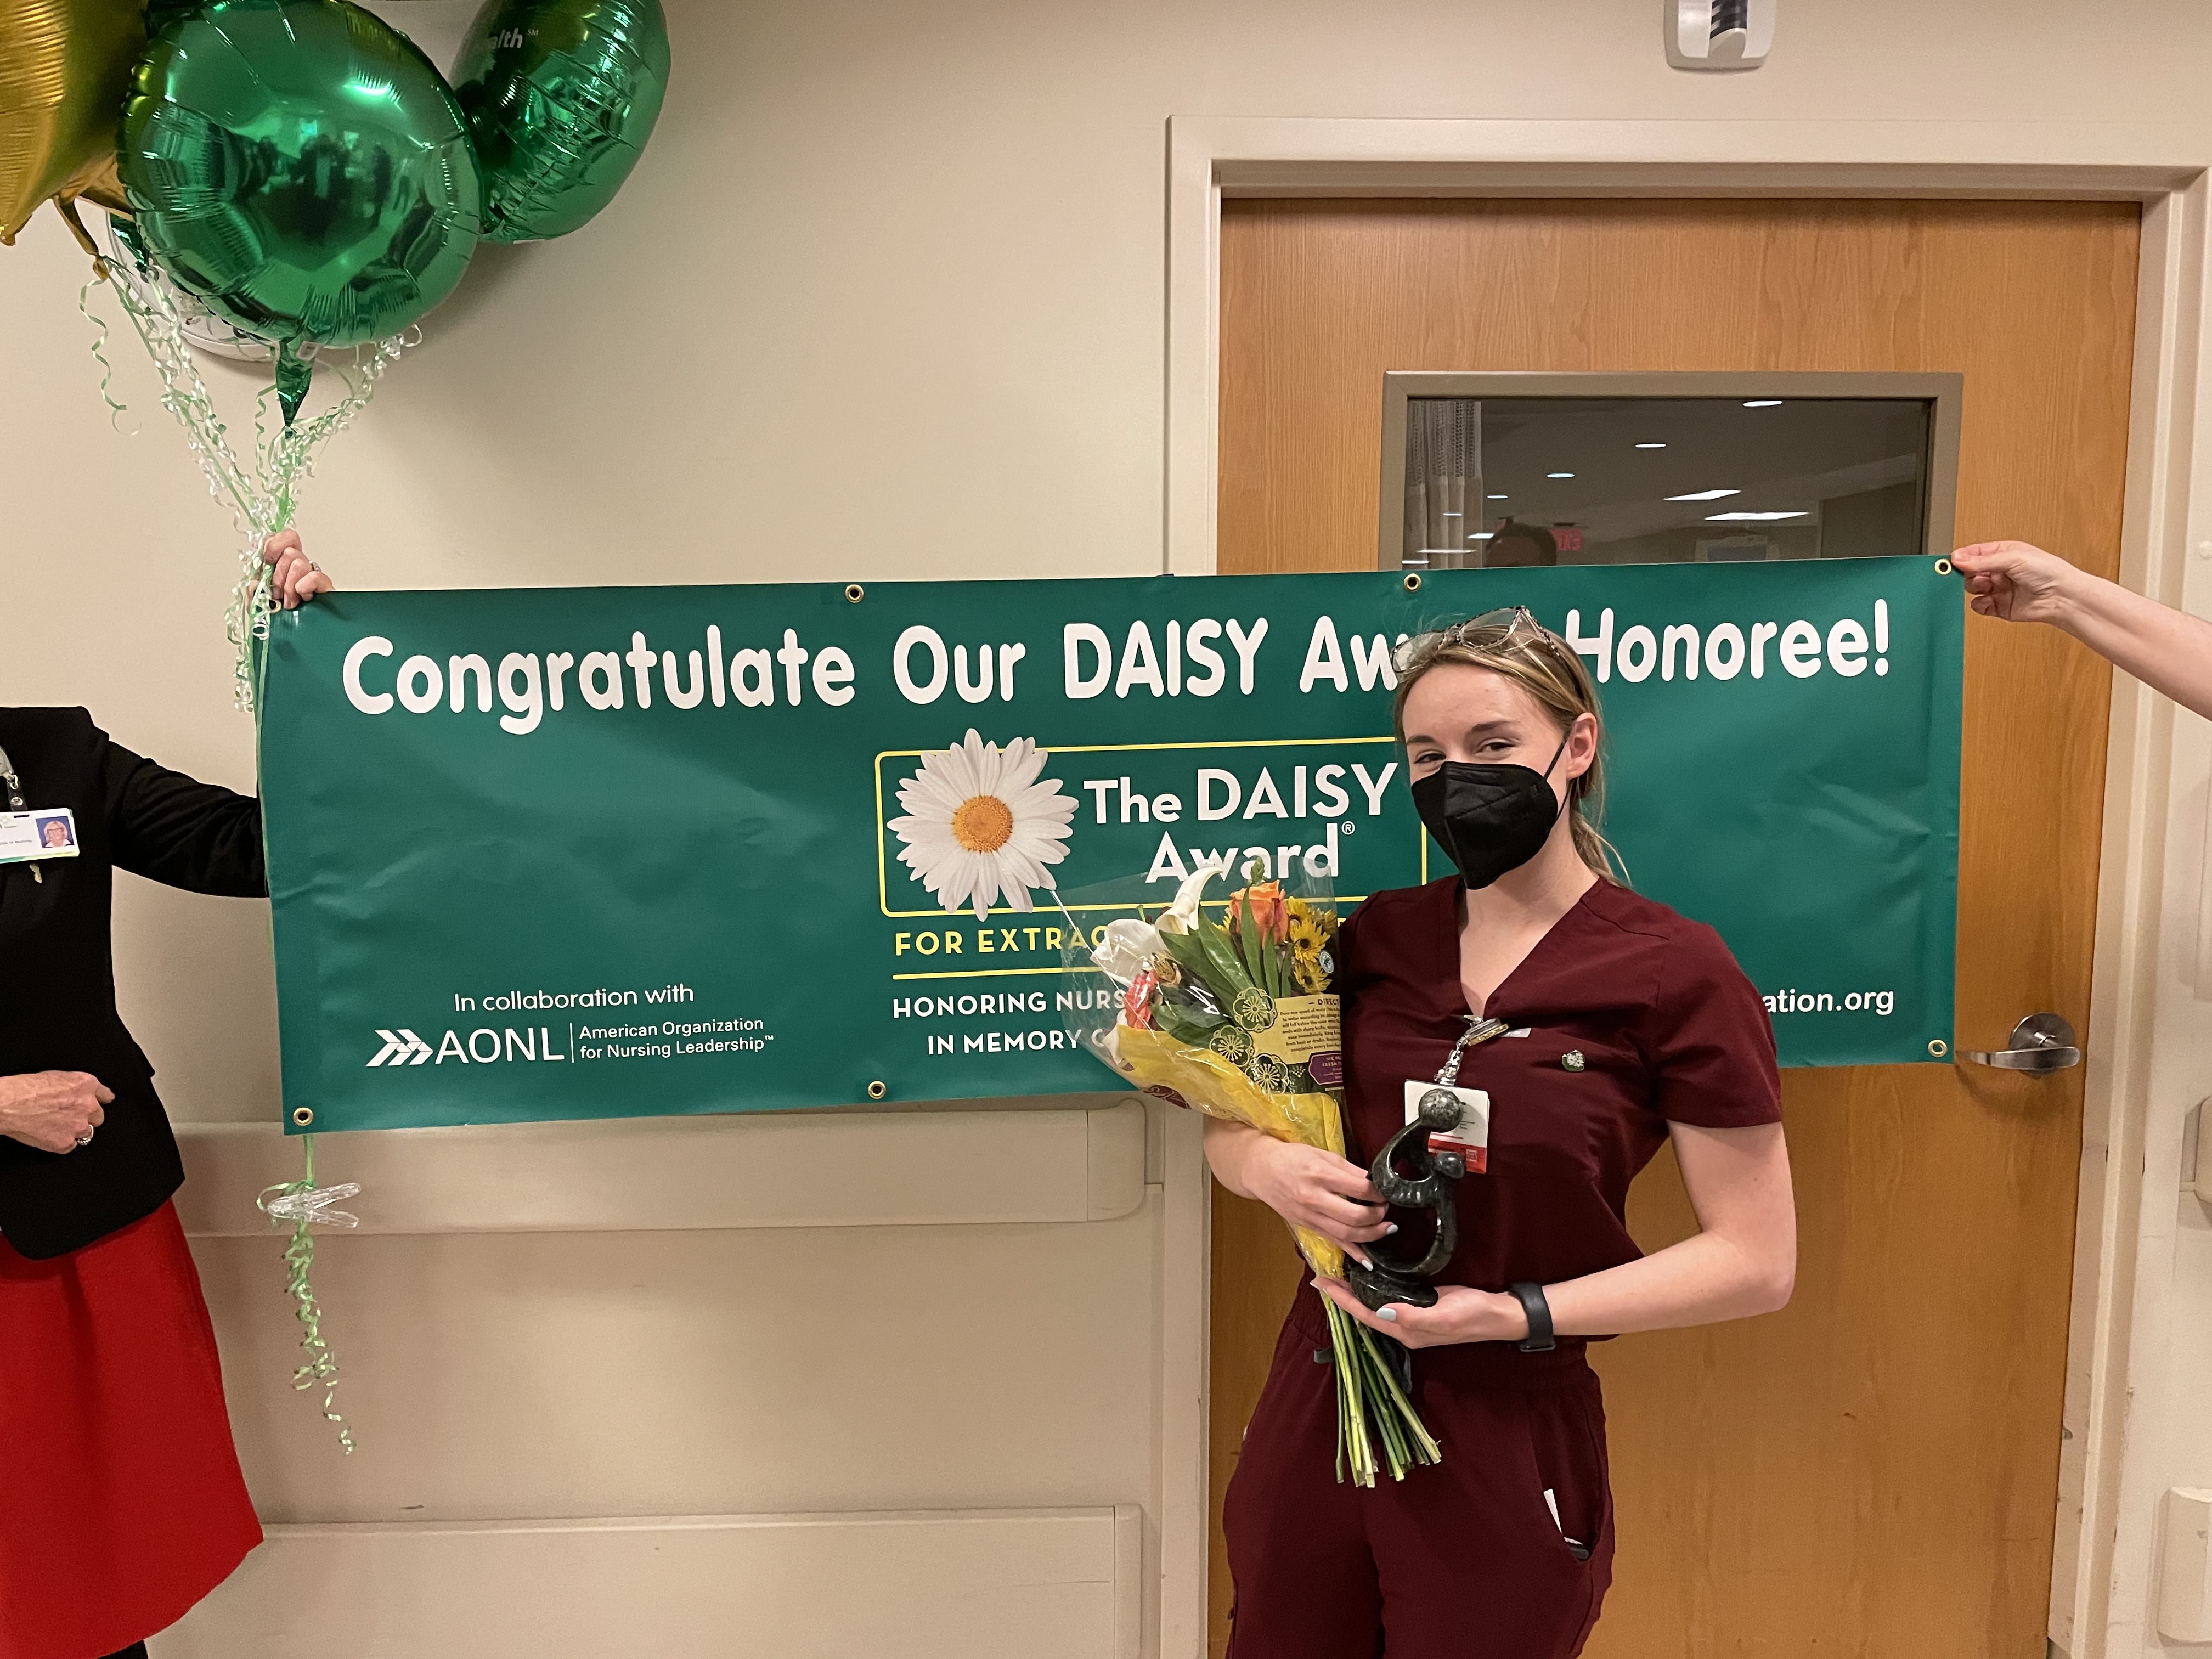 The DAISY Award for Extraordinary Nurses